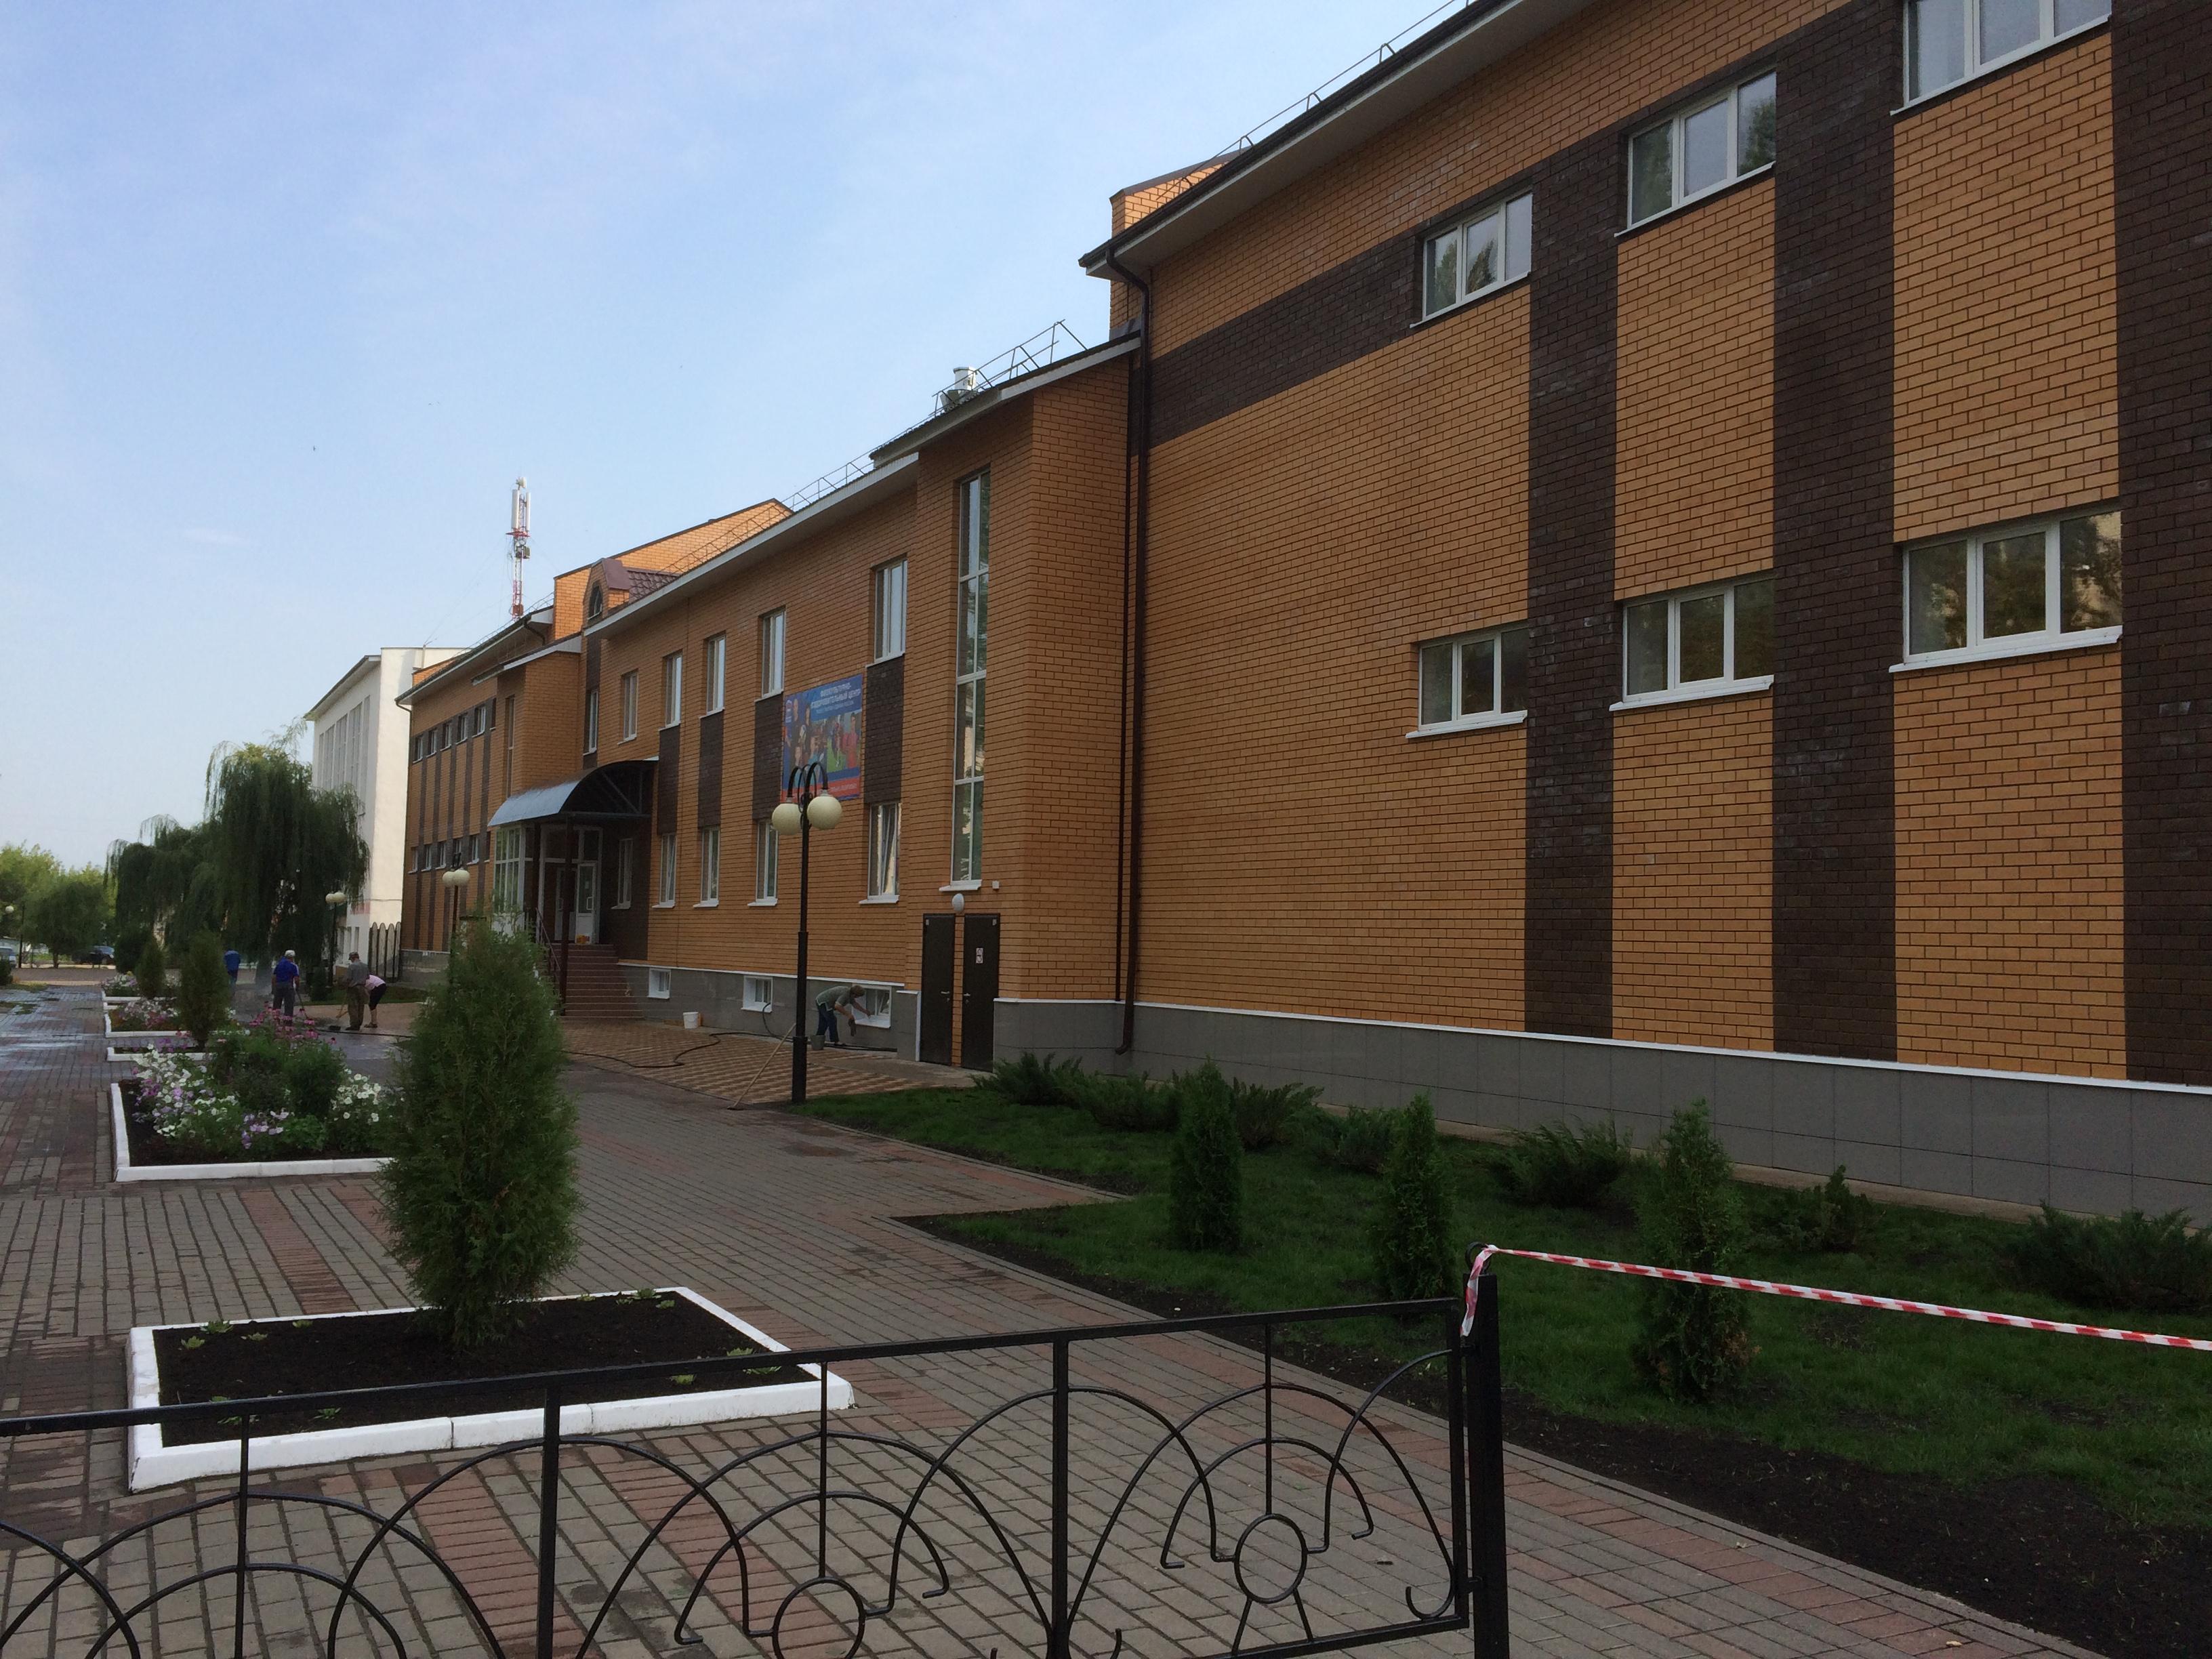 Строительство объекта: Физкультурно-оздоровительный центр г. Данков Липецкой области